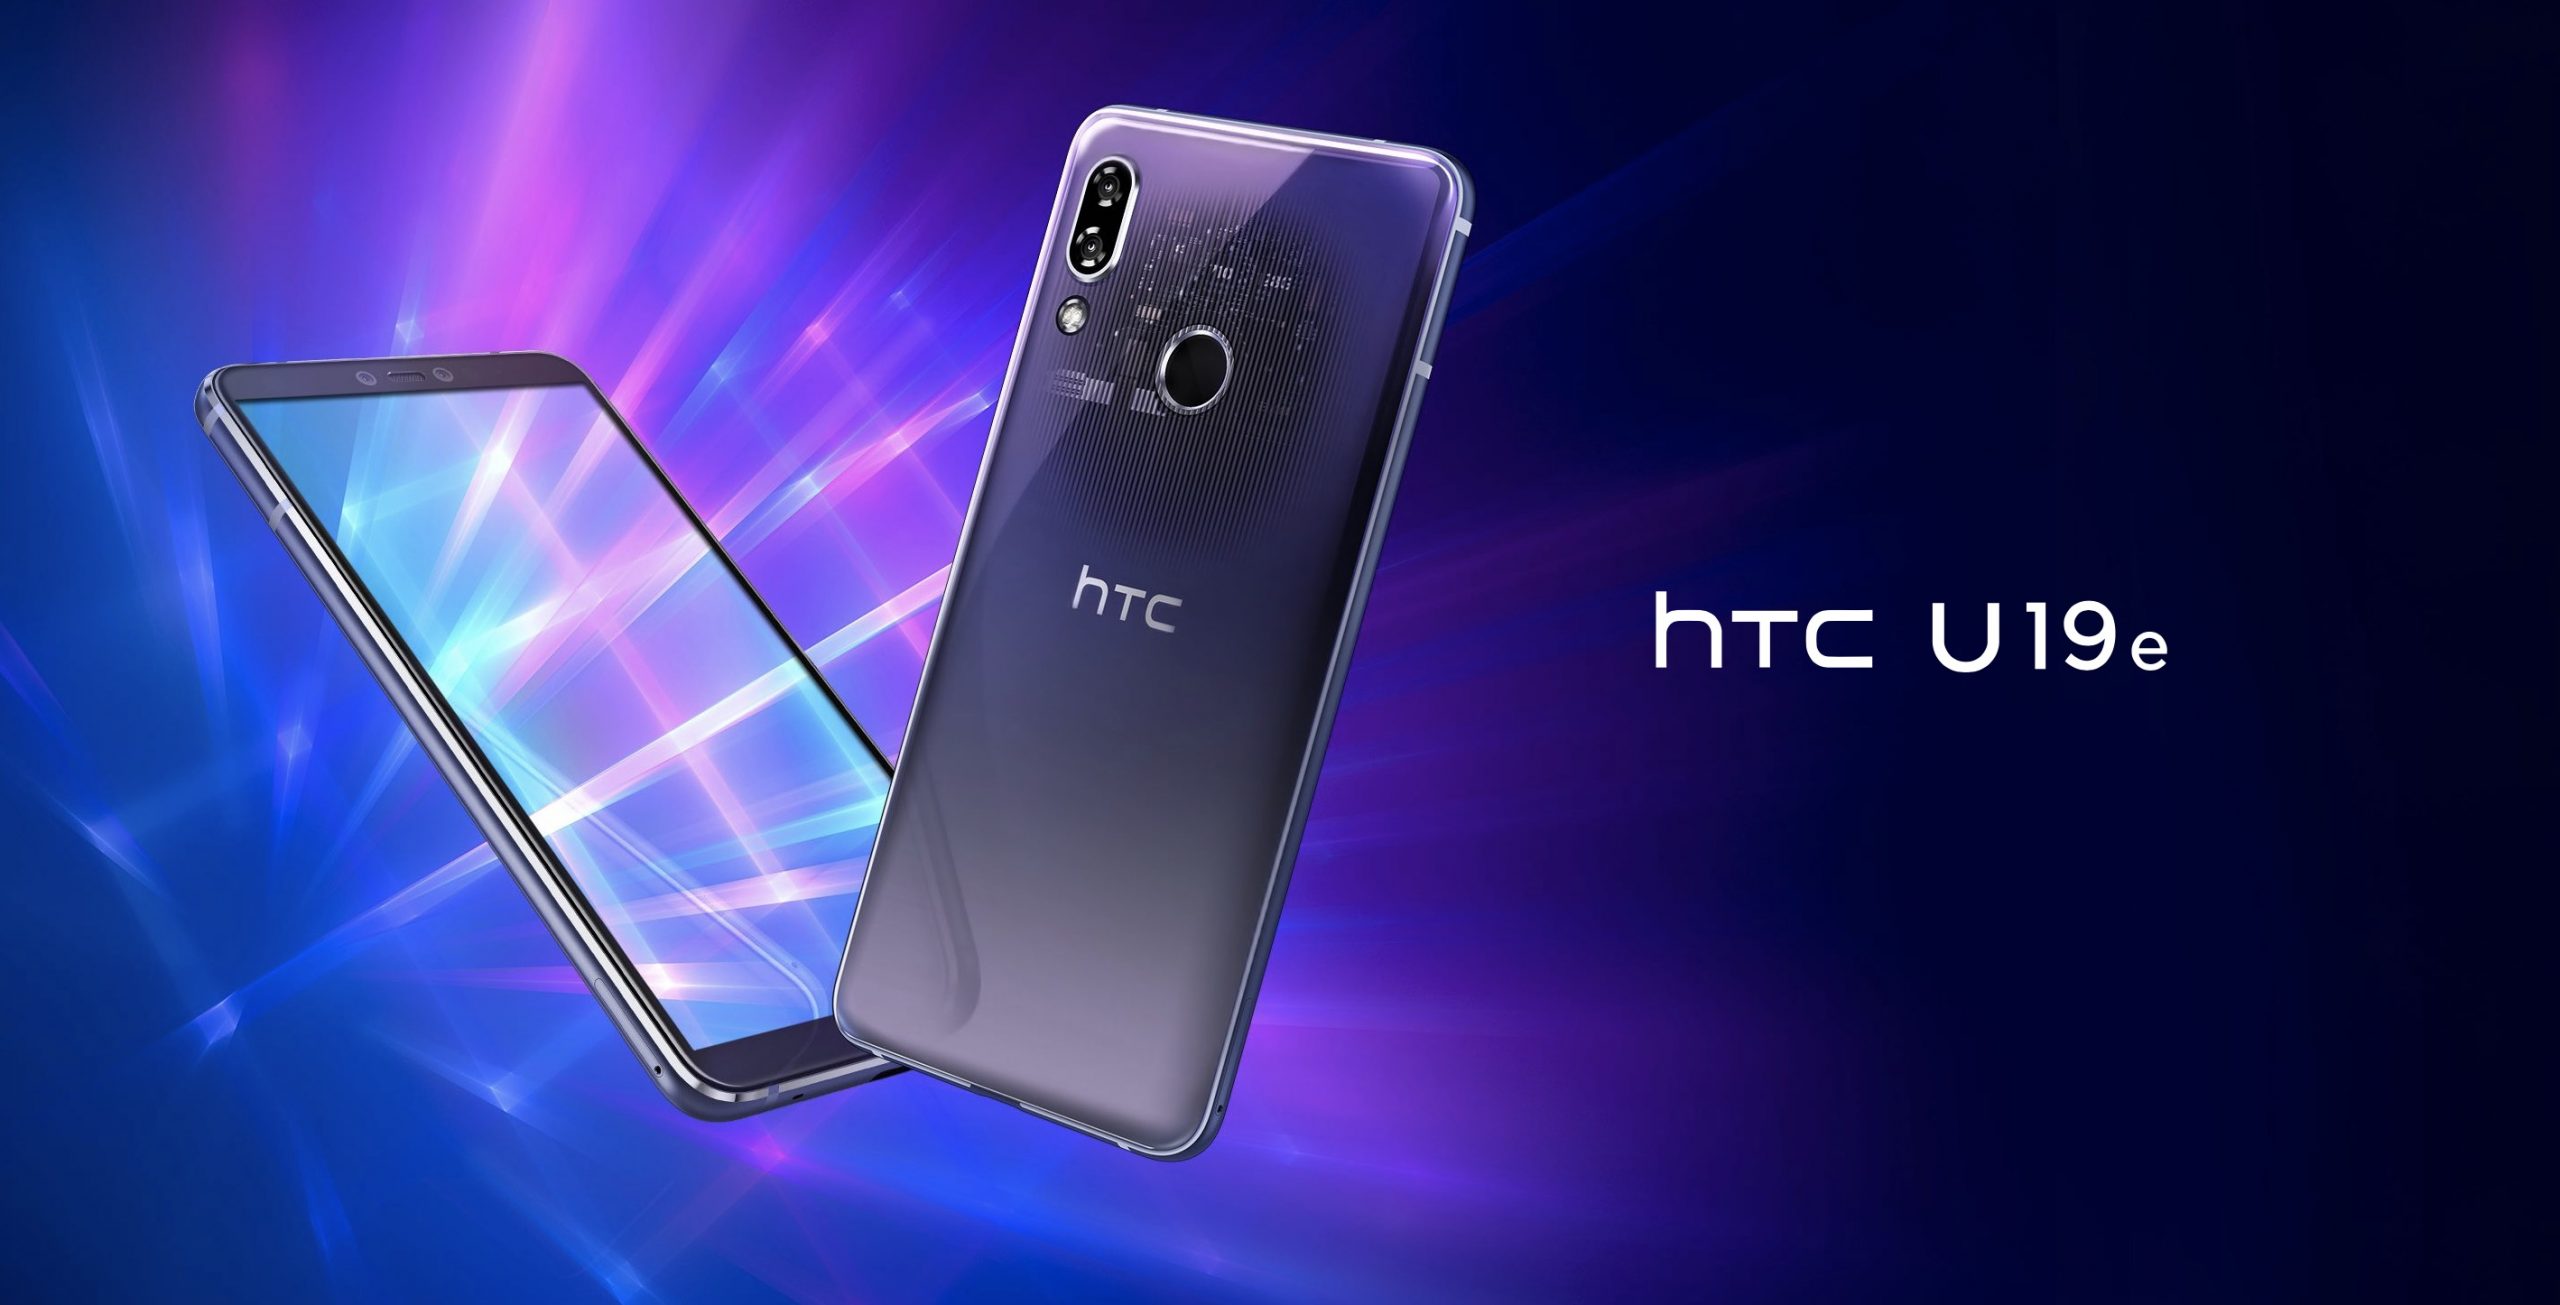 HTC trở lại với U19e, màn hình OLED có HDR10, chạy Snapdragon 710, bán tại Đài Loan, giá 10.5 triệu